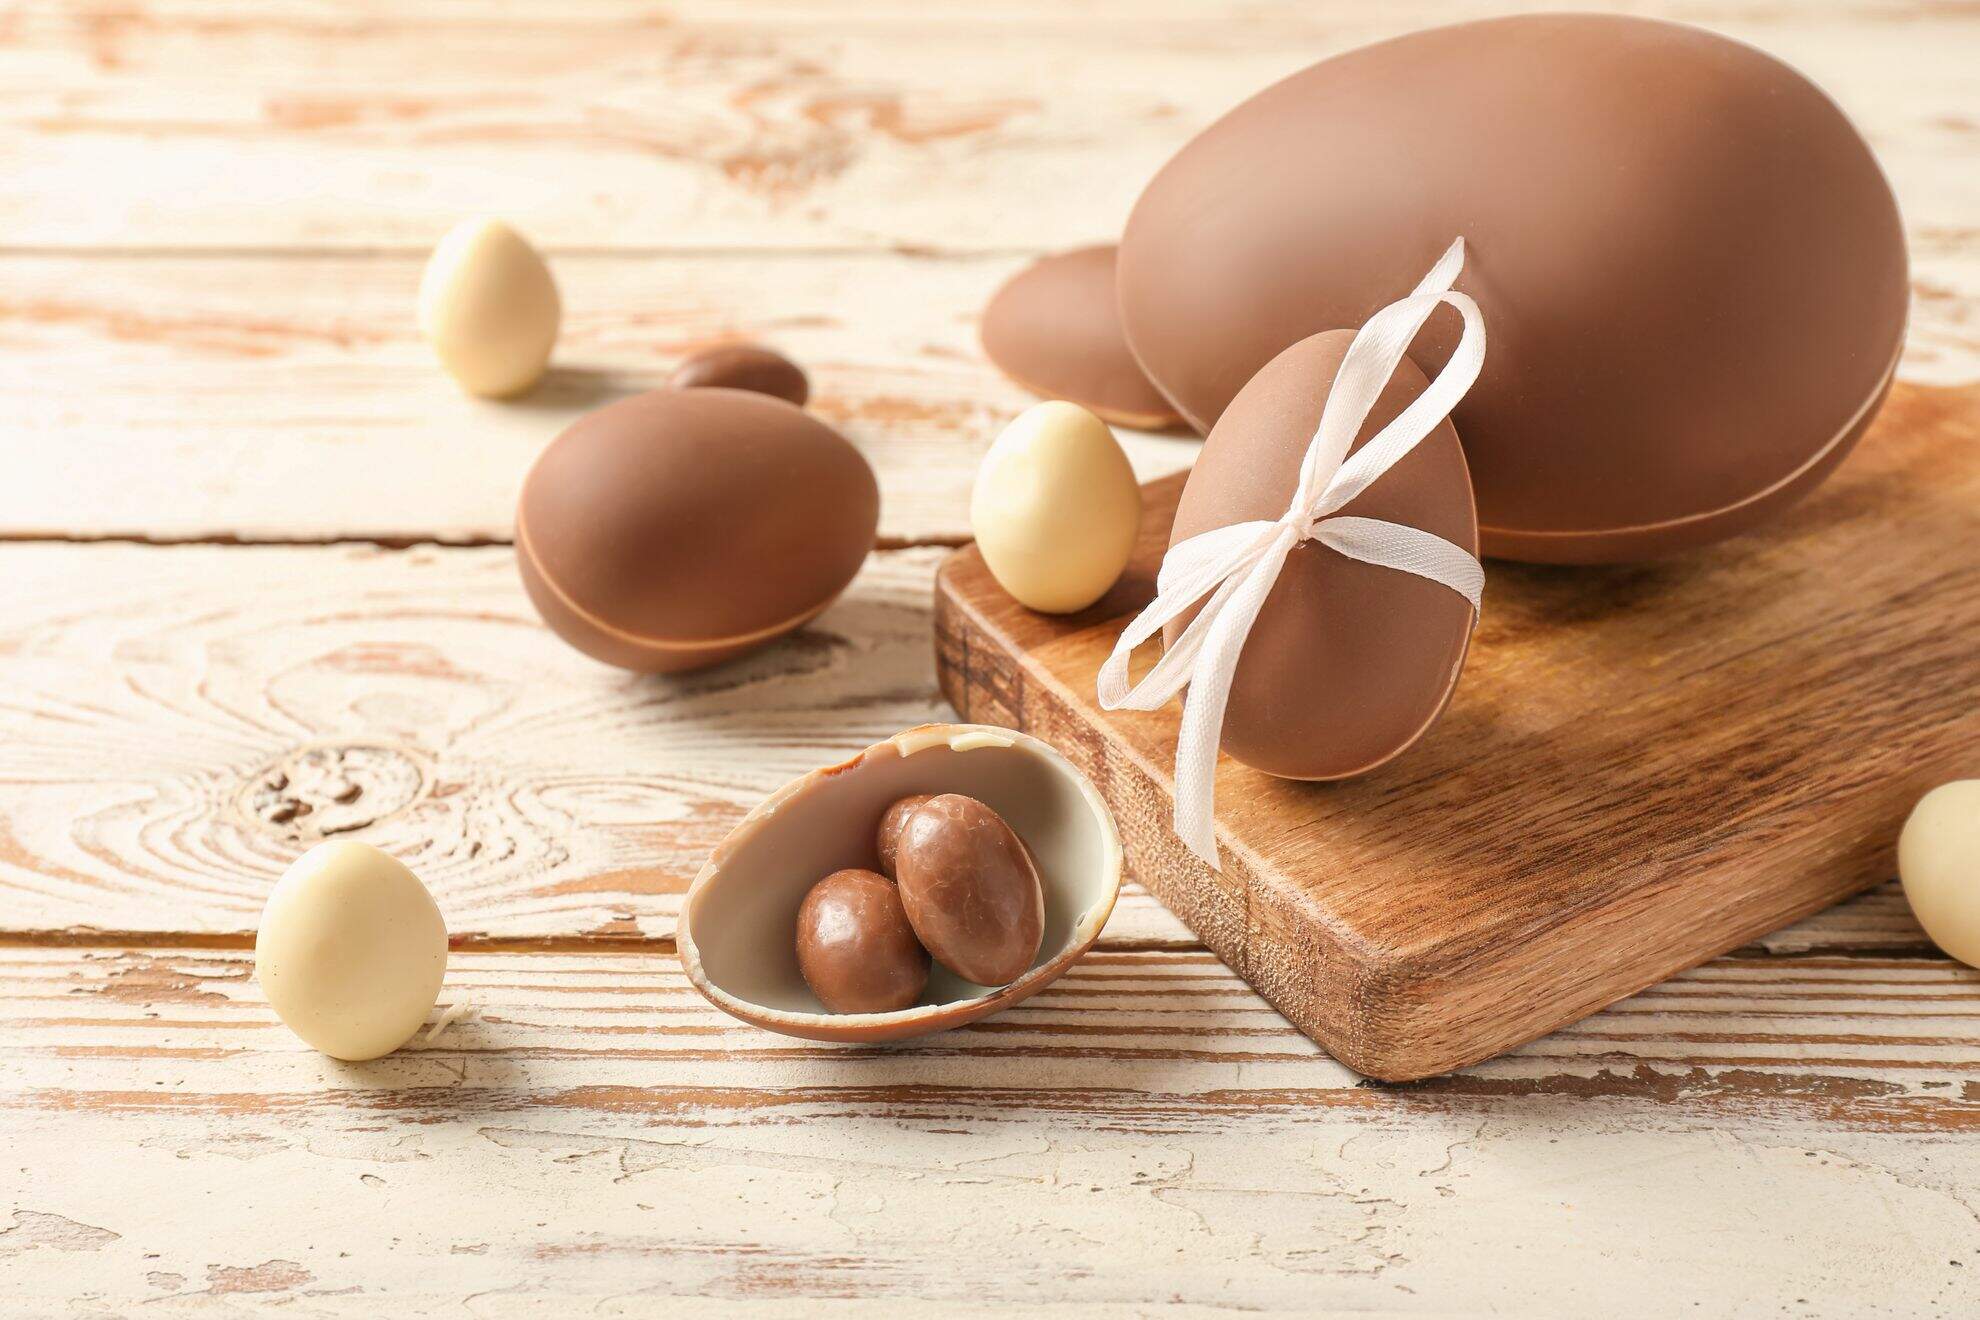 Bancada de madeira com um ovo grande de chocolate fechado, dois menores fechados, um deles com um laço branco, um menor aberto com ovinhos menores dentro, cercado por três ovos de galinha.